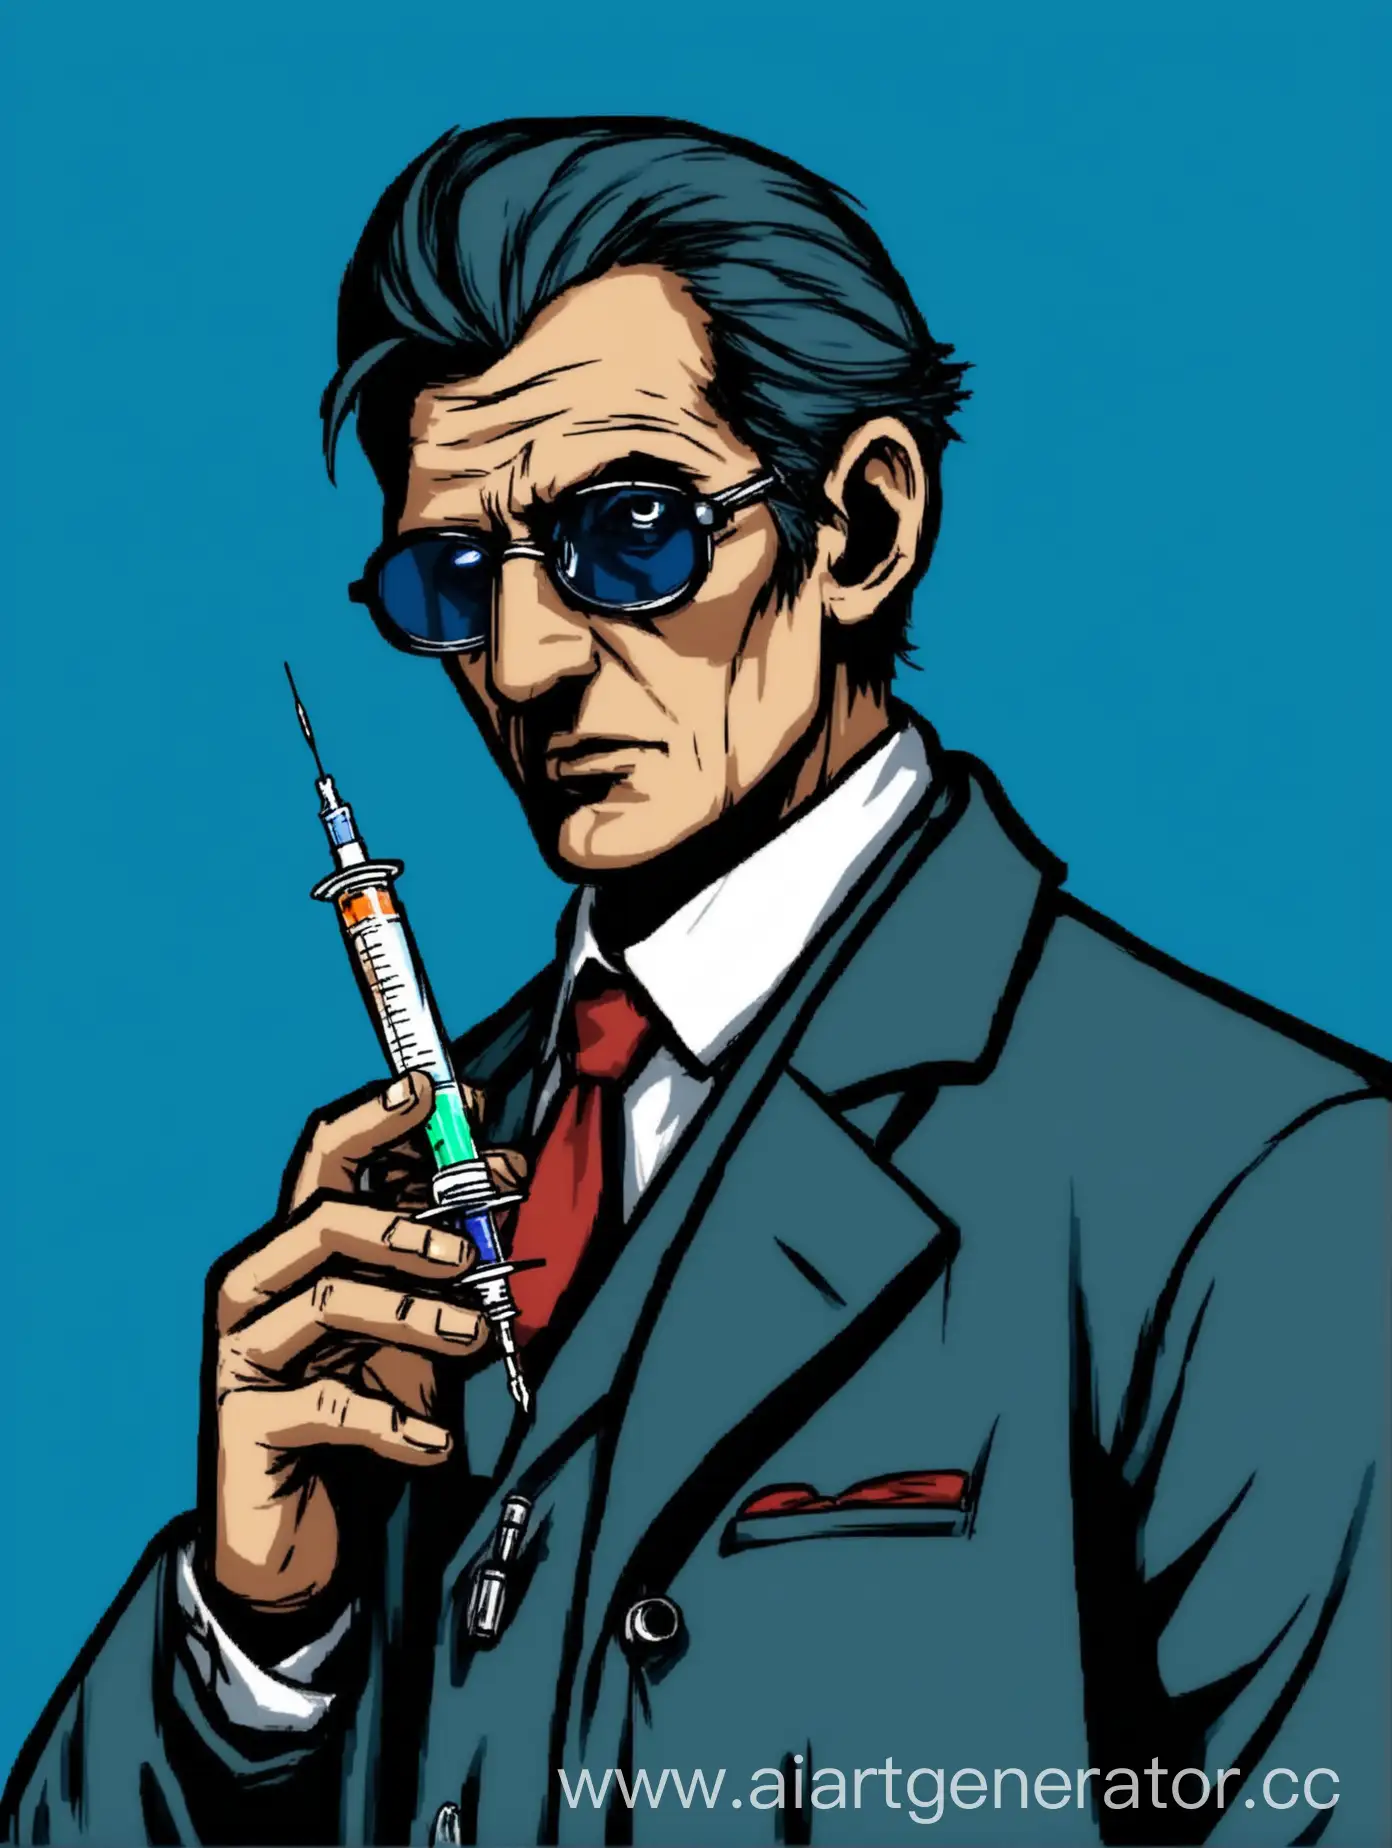 Mafia-Doctor-Holding-Syringe-Against-Blue-Background